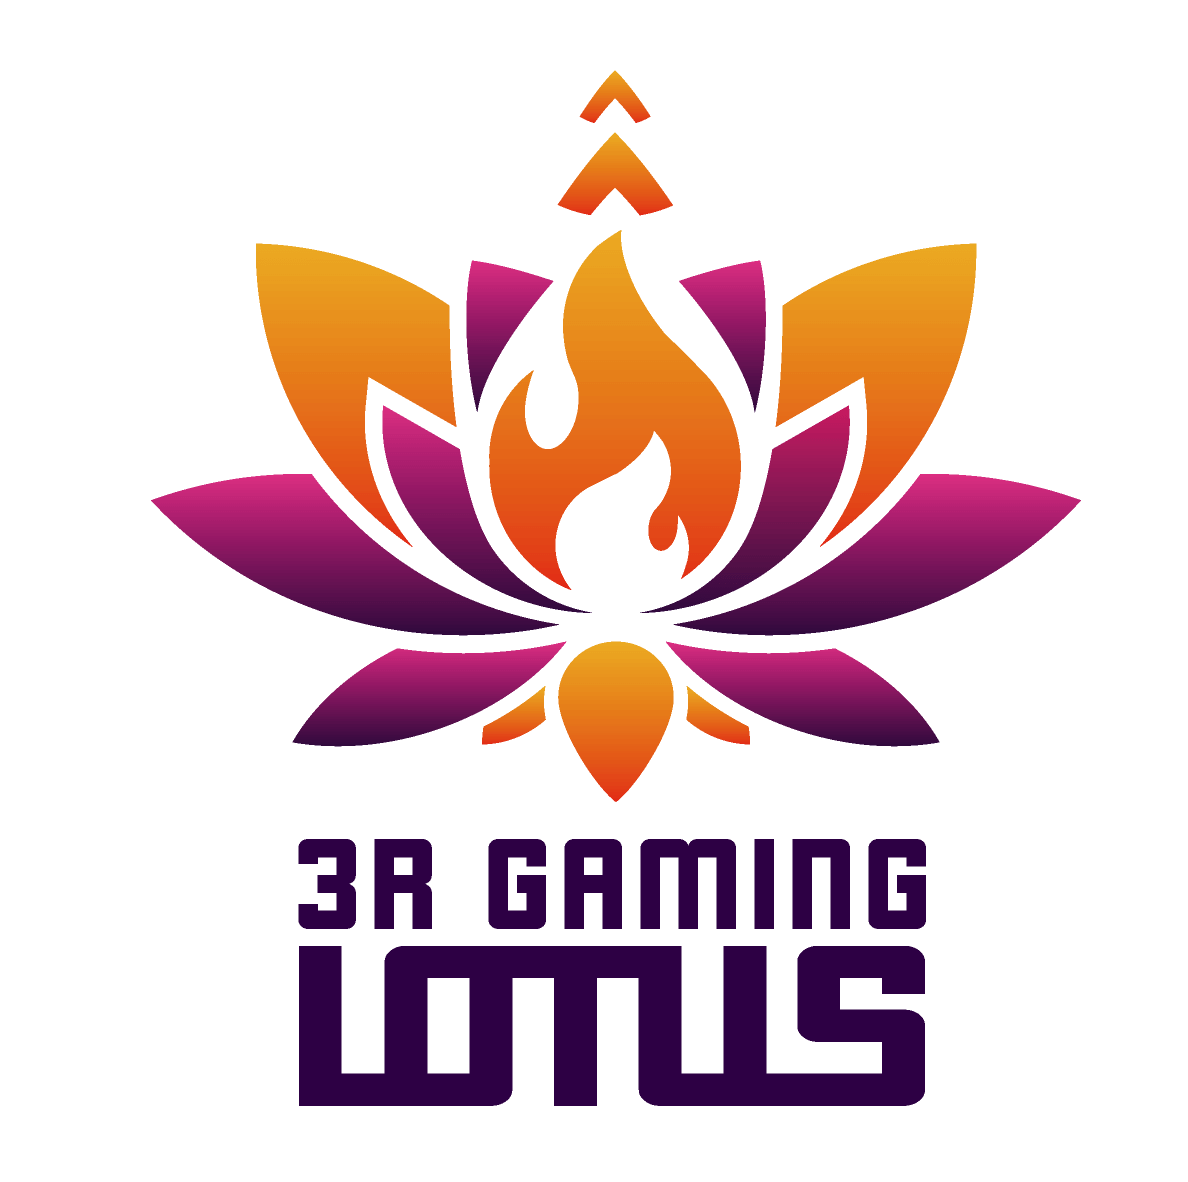 プロeスポーツチーム3R gaming LotusがPUBG G1リーグに出場します